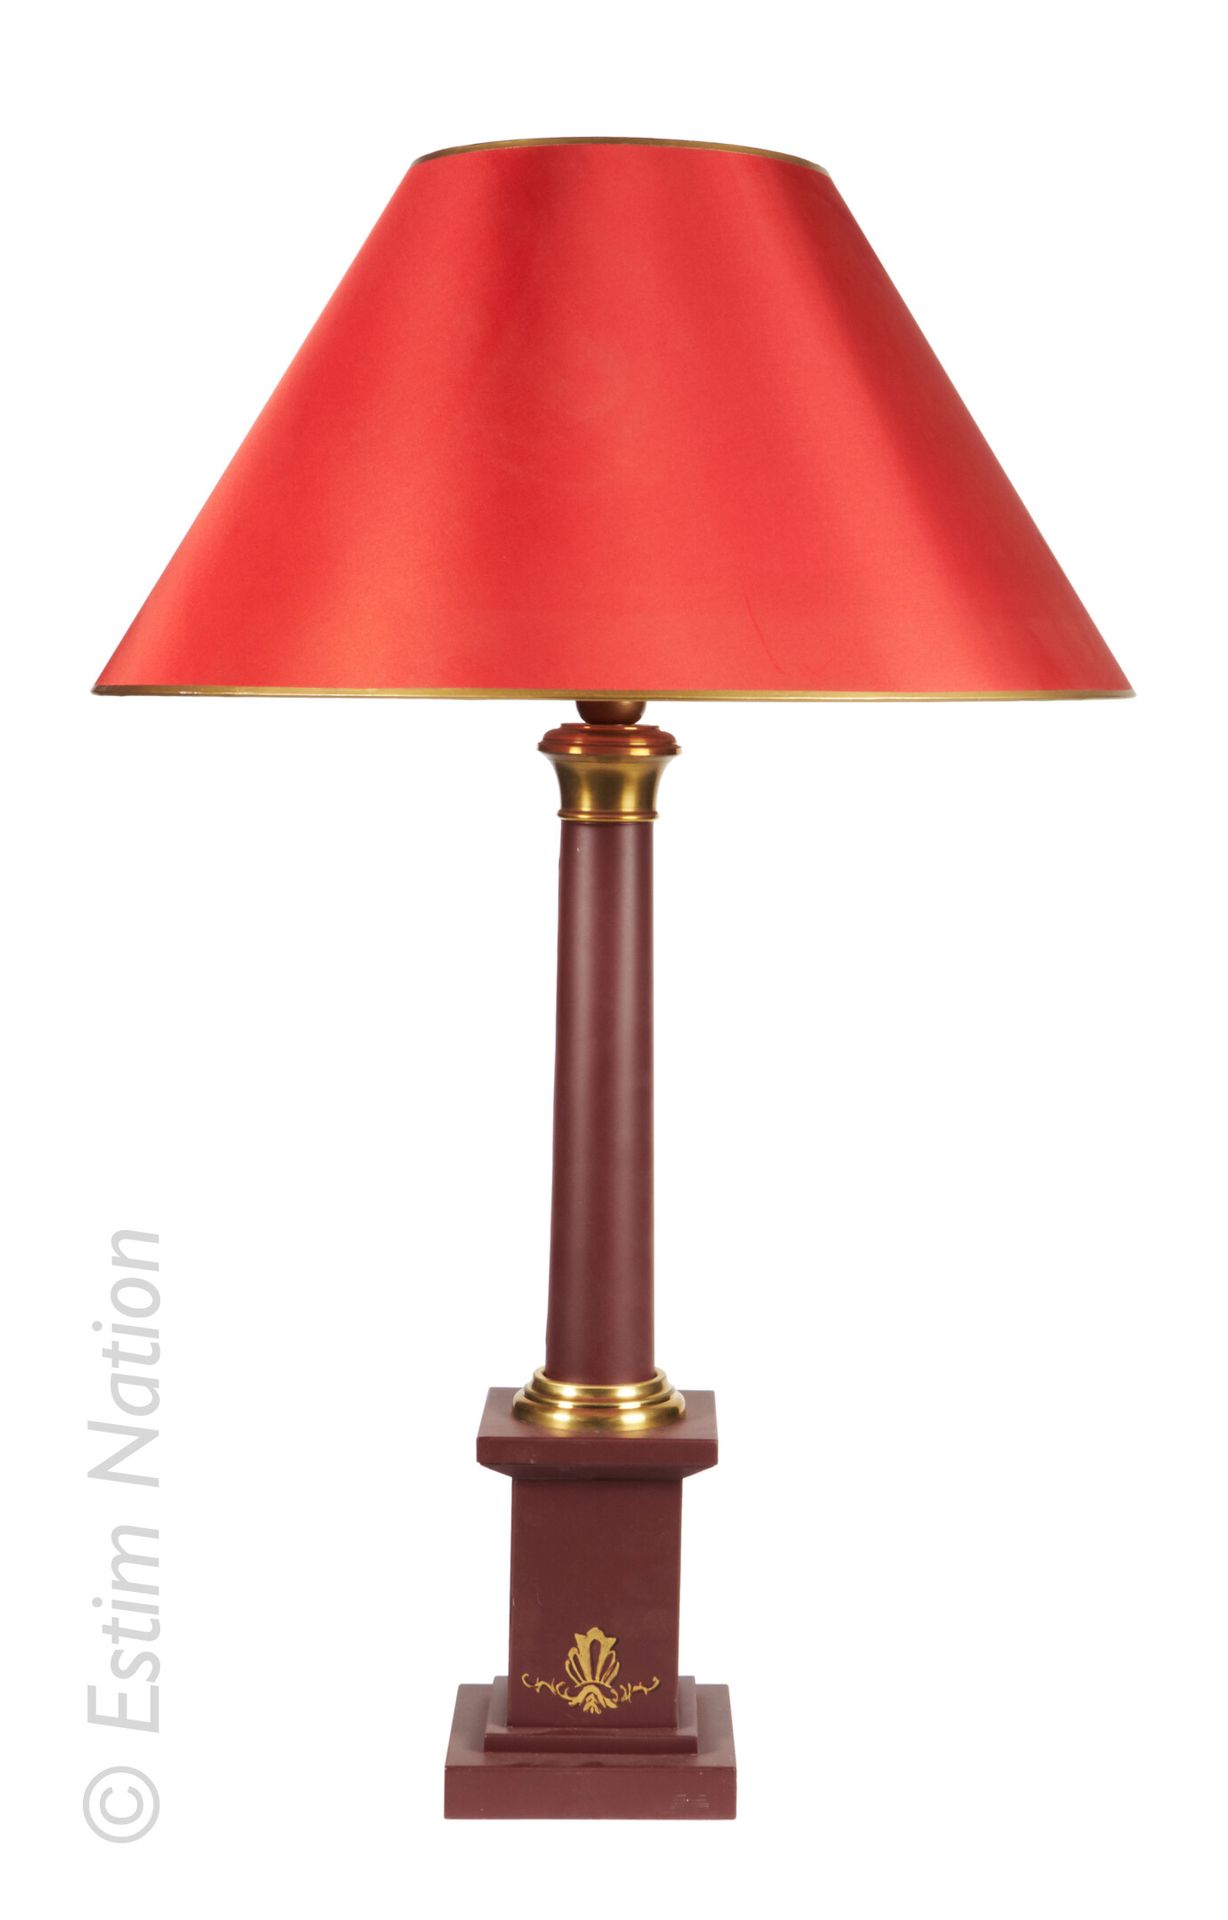 LAMPE STYLE EMPIRE Elektrischer Lampenständer aus violett lackiertem Metall, der&hellip;